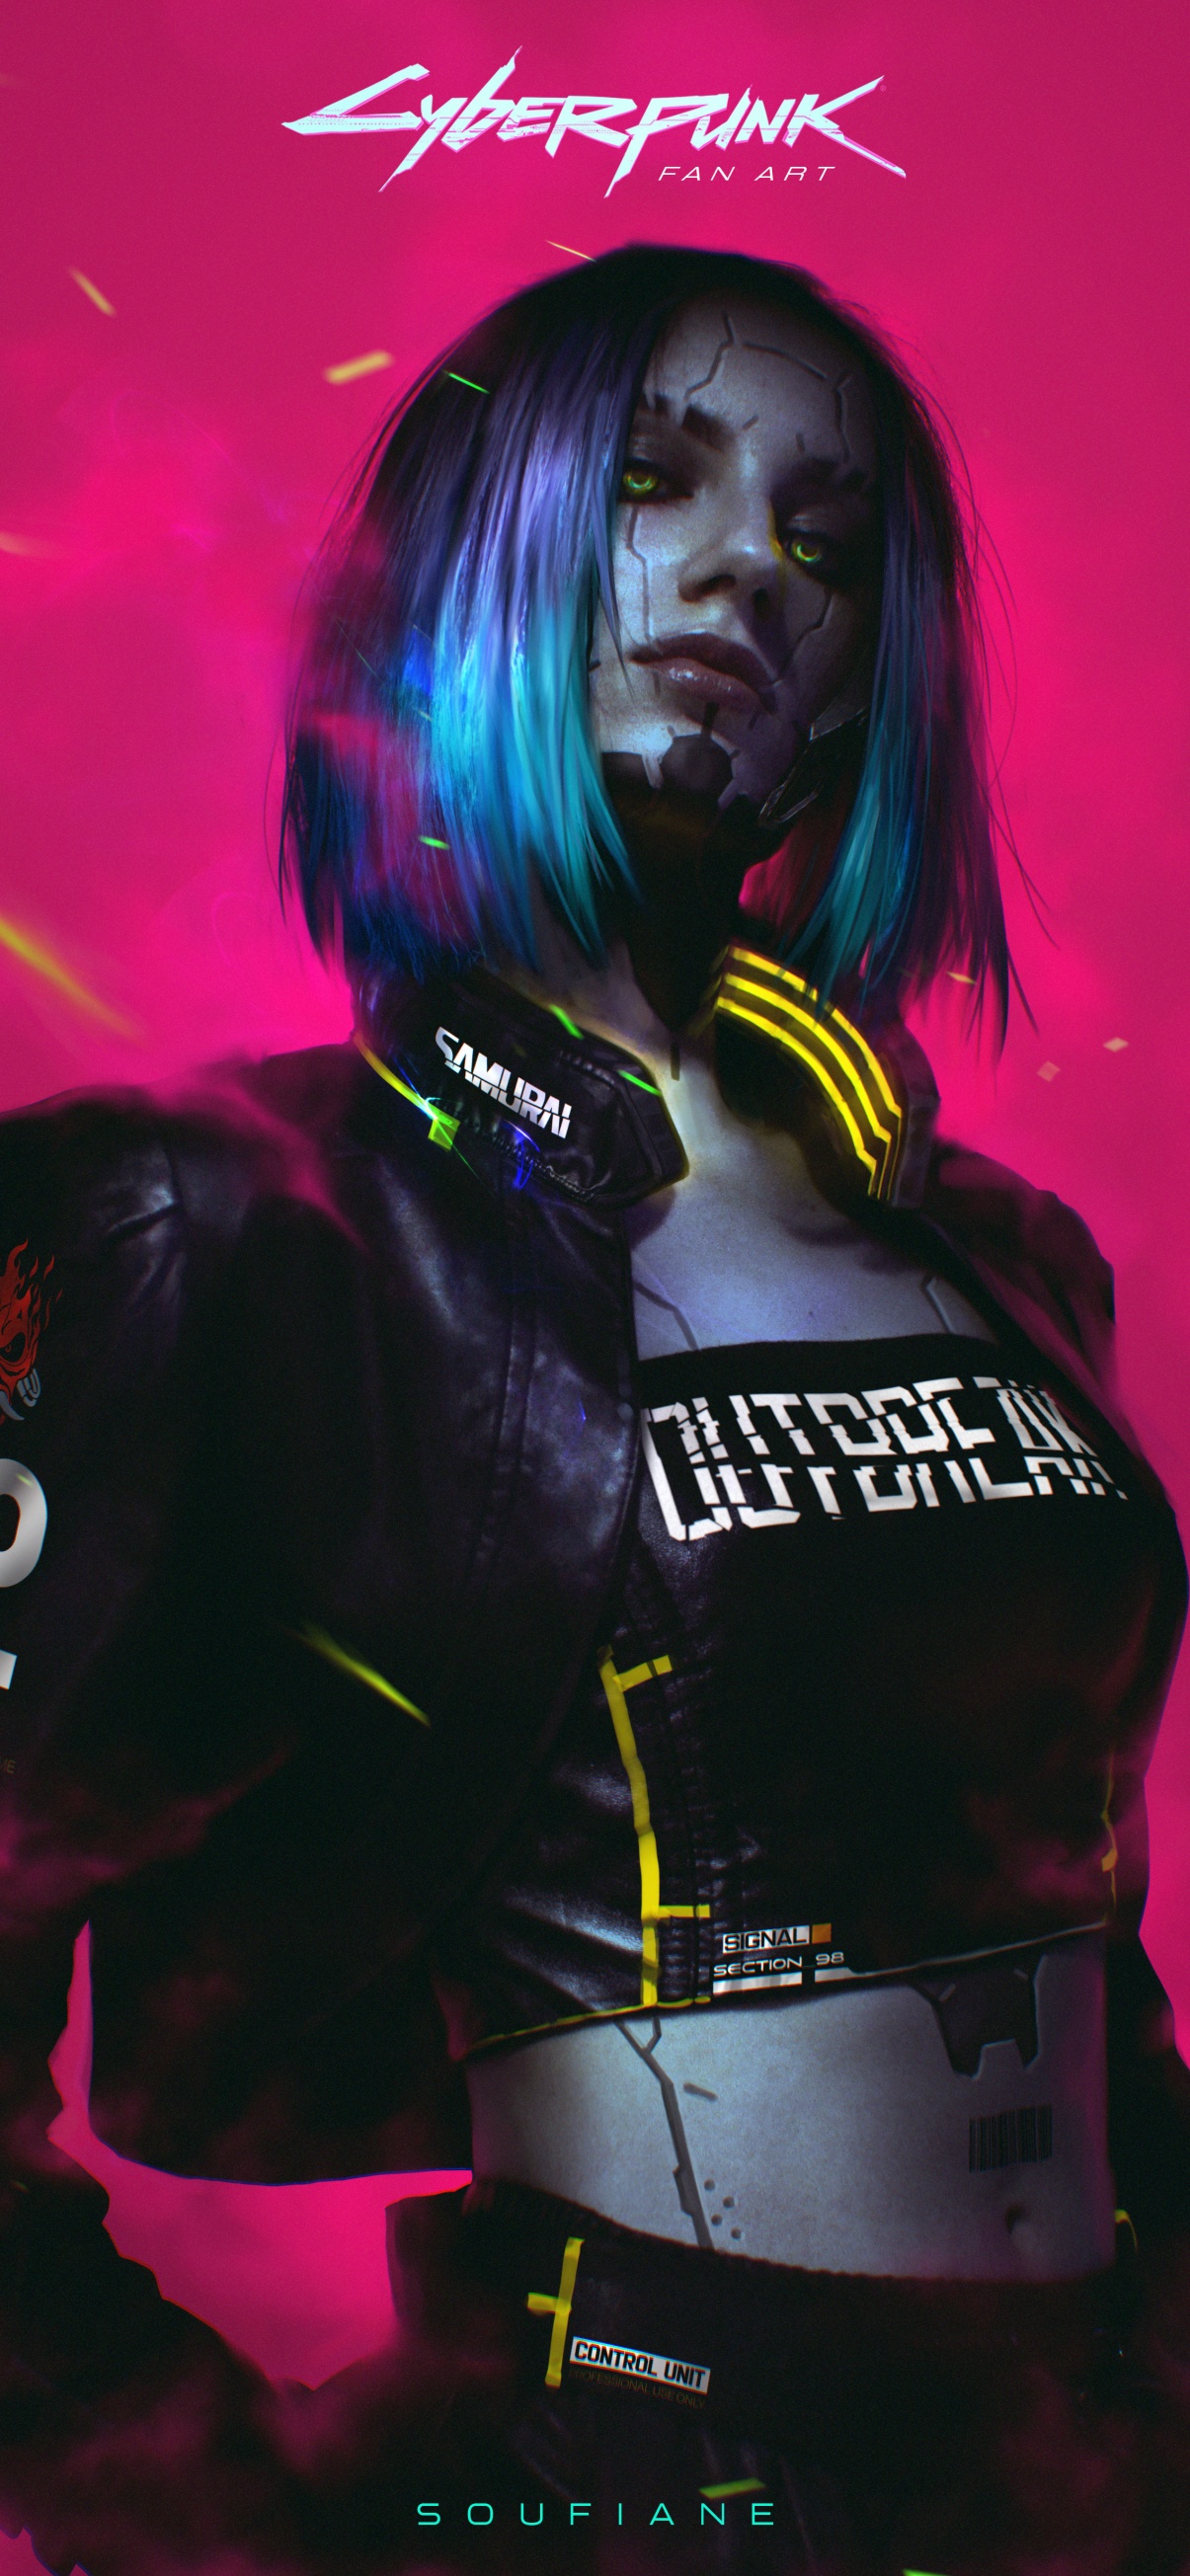 Aesthetic Cyberpunk Girl Desktop Wallpaper - Cyberpunk Wallpaper